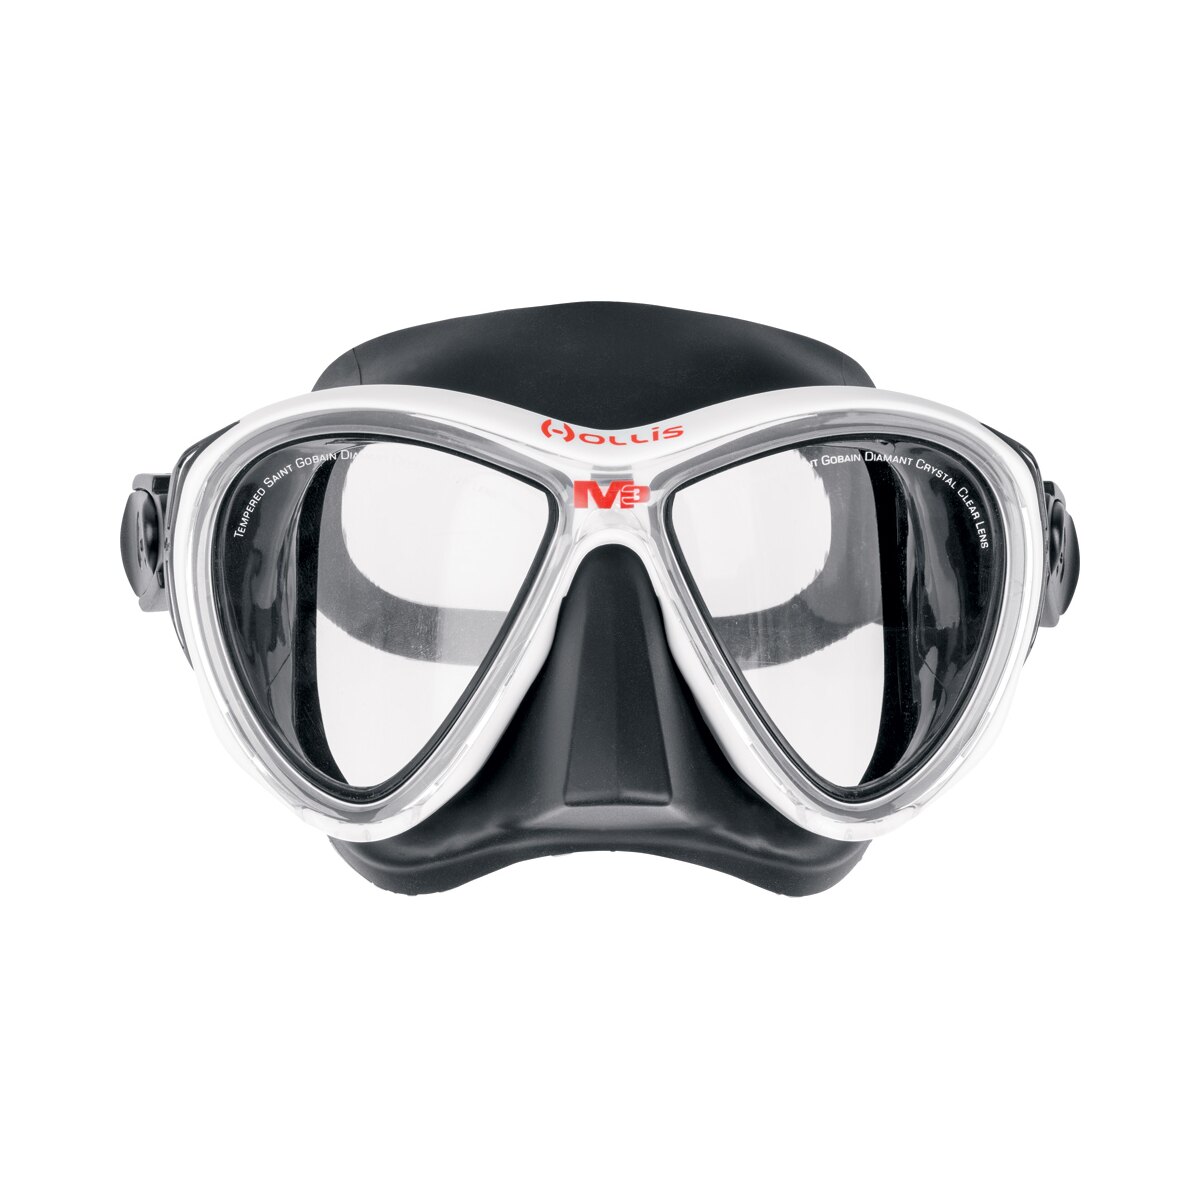 indre forsvar Tutor Hollis M-3 Mask with Crystal Clear Lenses, 116,95 €